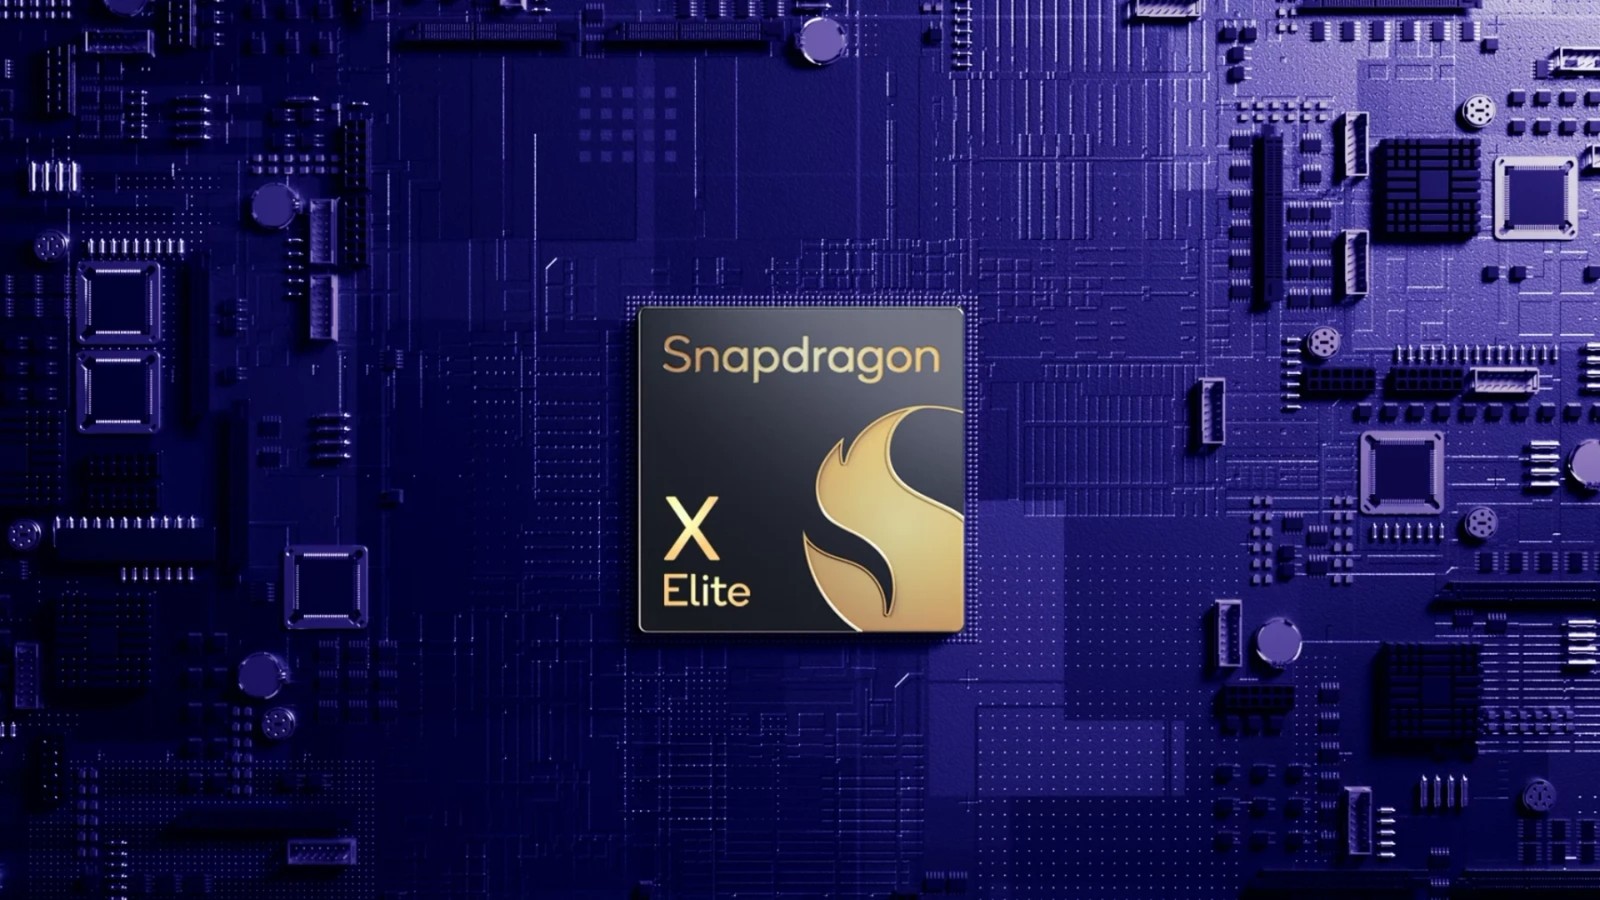 No to czas na rewolucję. Snapdragon X Elite pokazał, na co stać grafikę ARM